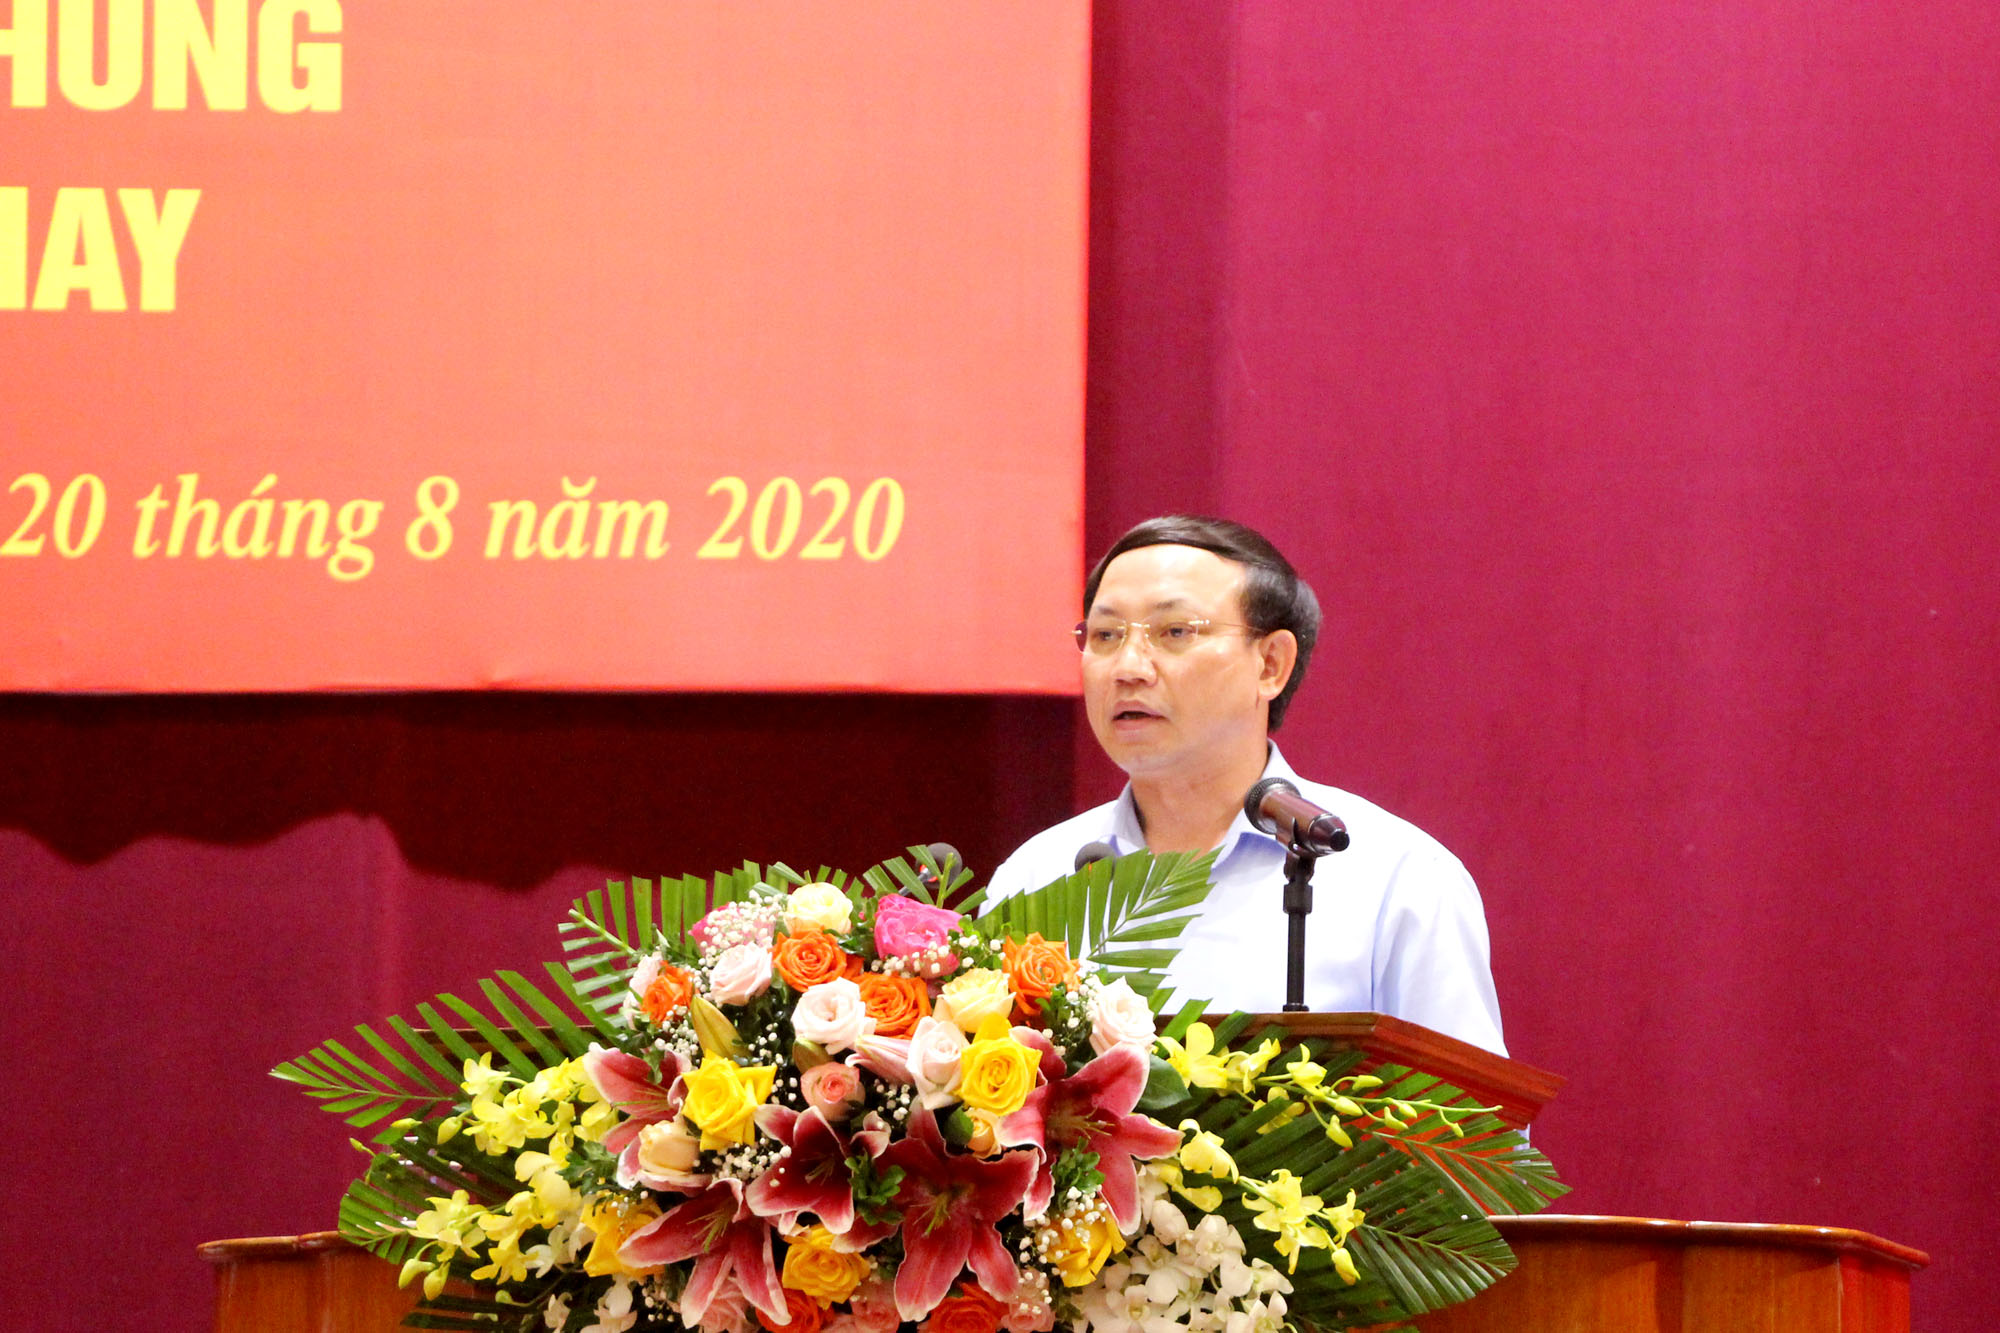 Đồng chí Nguyễn Xuân Ký, Bí thư Tỉnh ủy, Chủ tịch HĐND tỉnh, kết luận hội nghị.